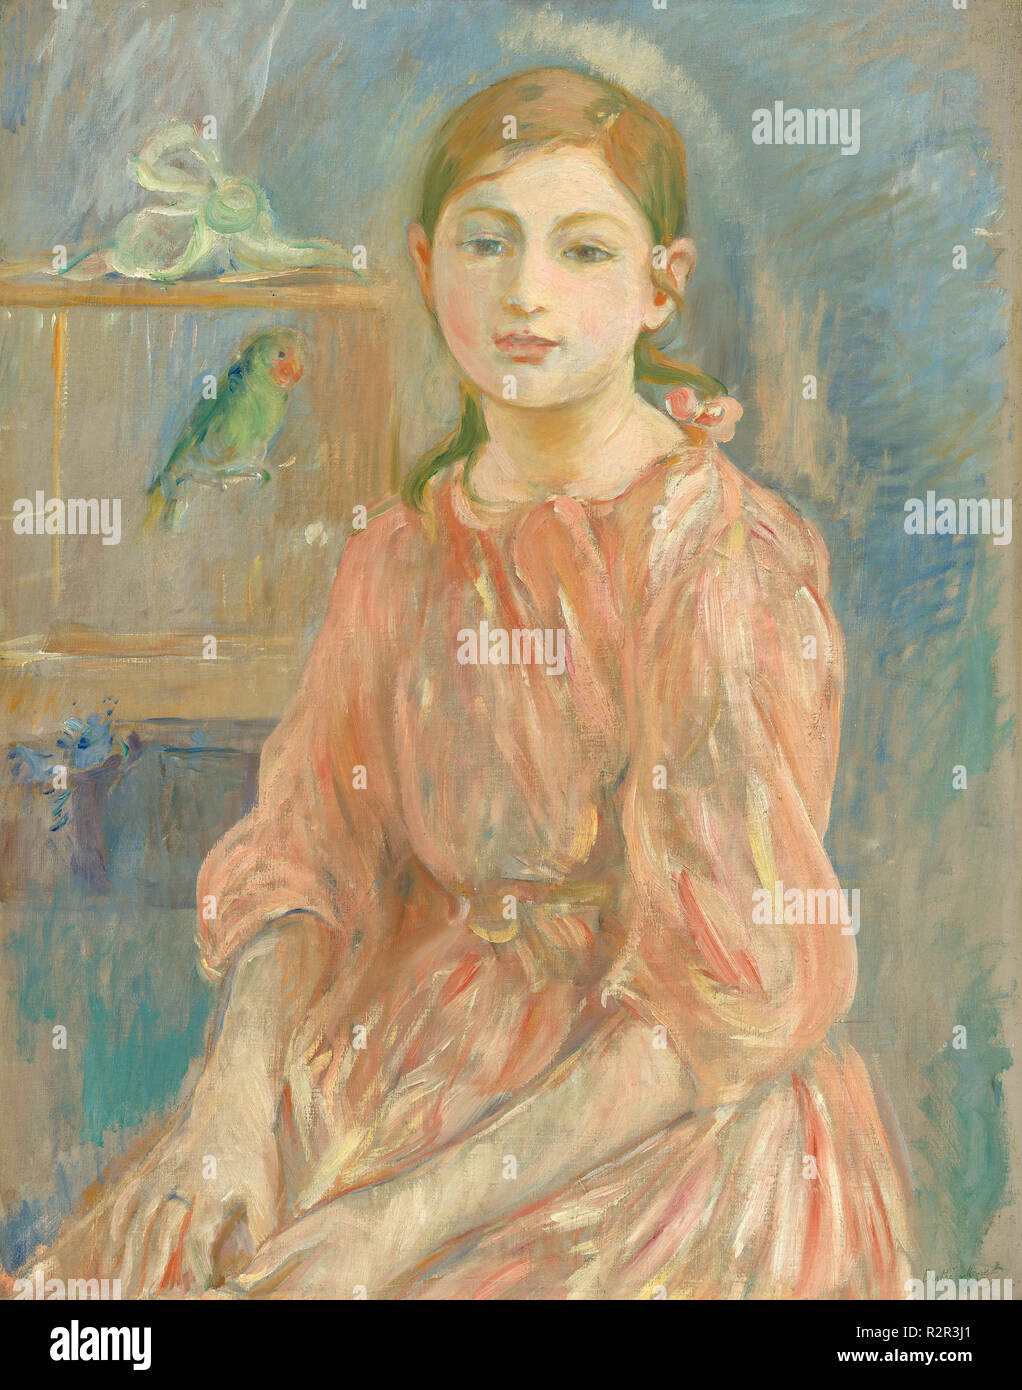 Des Künstlers Tochter mit einem Wellensittich. Stand: 1890. Maße: gesamt: 65,6 x 52,1 cm (25 13/16 x 20 1/2 in.) gerahmt: 85,7 x 71,4 cm (33 3/4 x 28 1/8 in.). Medium: Öl auf Leinwand. Museum: Nationalgalerie, Washington DC. Autor: Berthe Morisot. Stockfoto